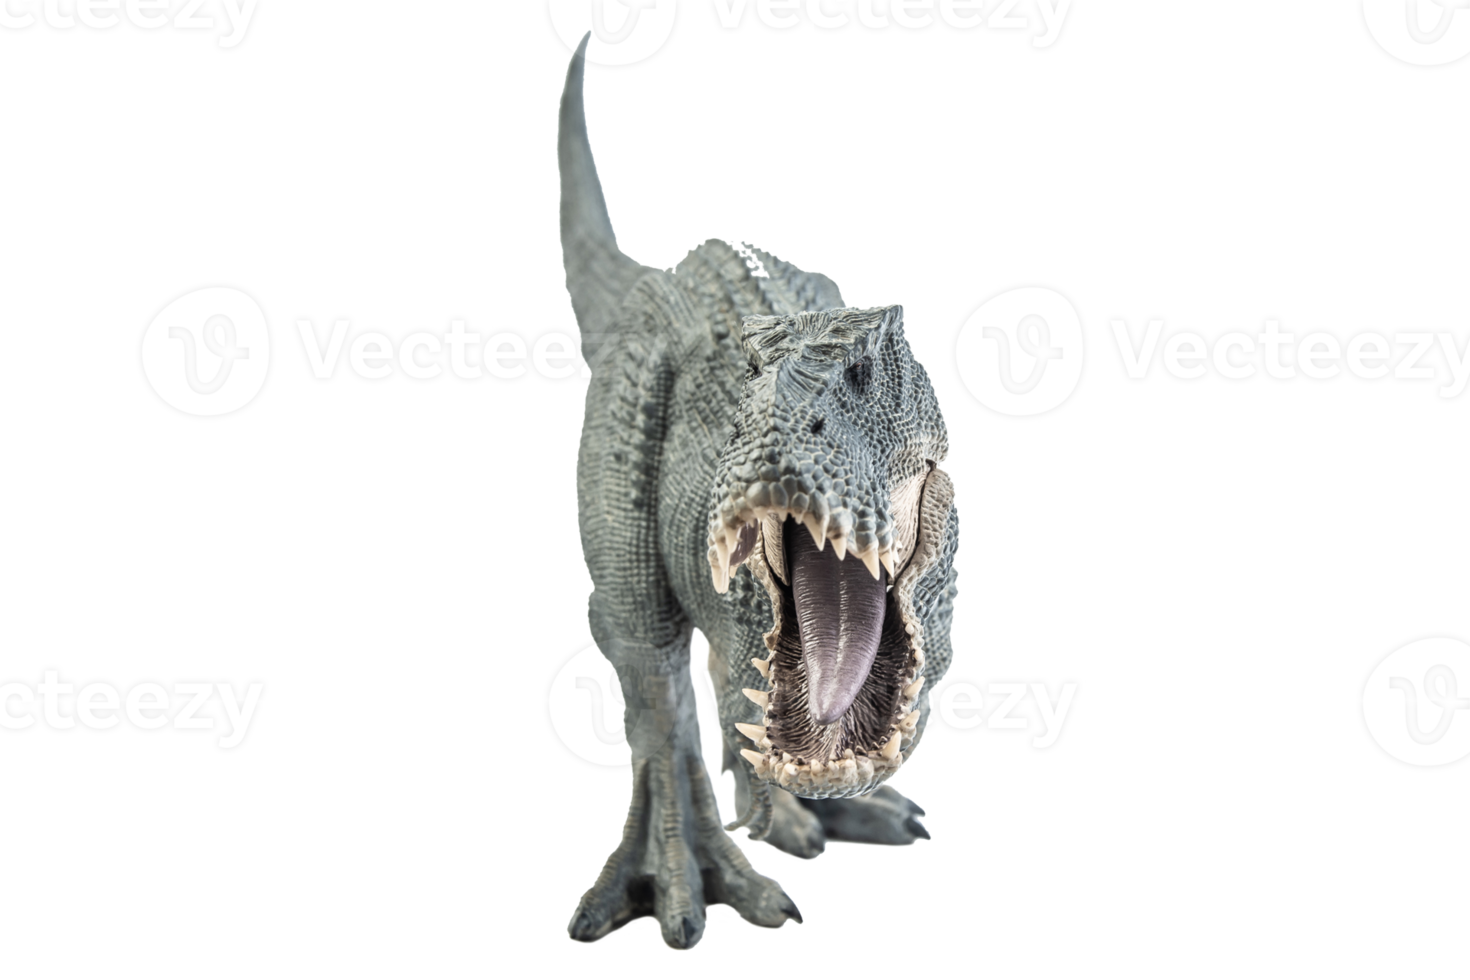 tiranossauro t-rex, dinossauro em fundo branco png